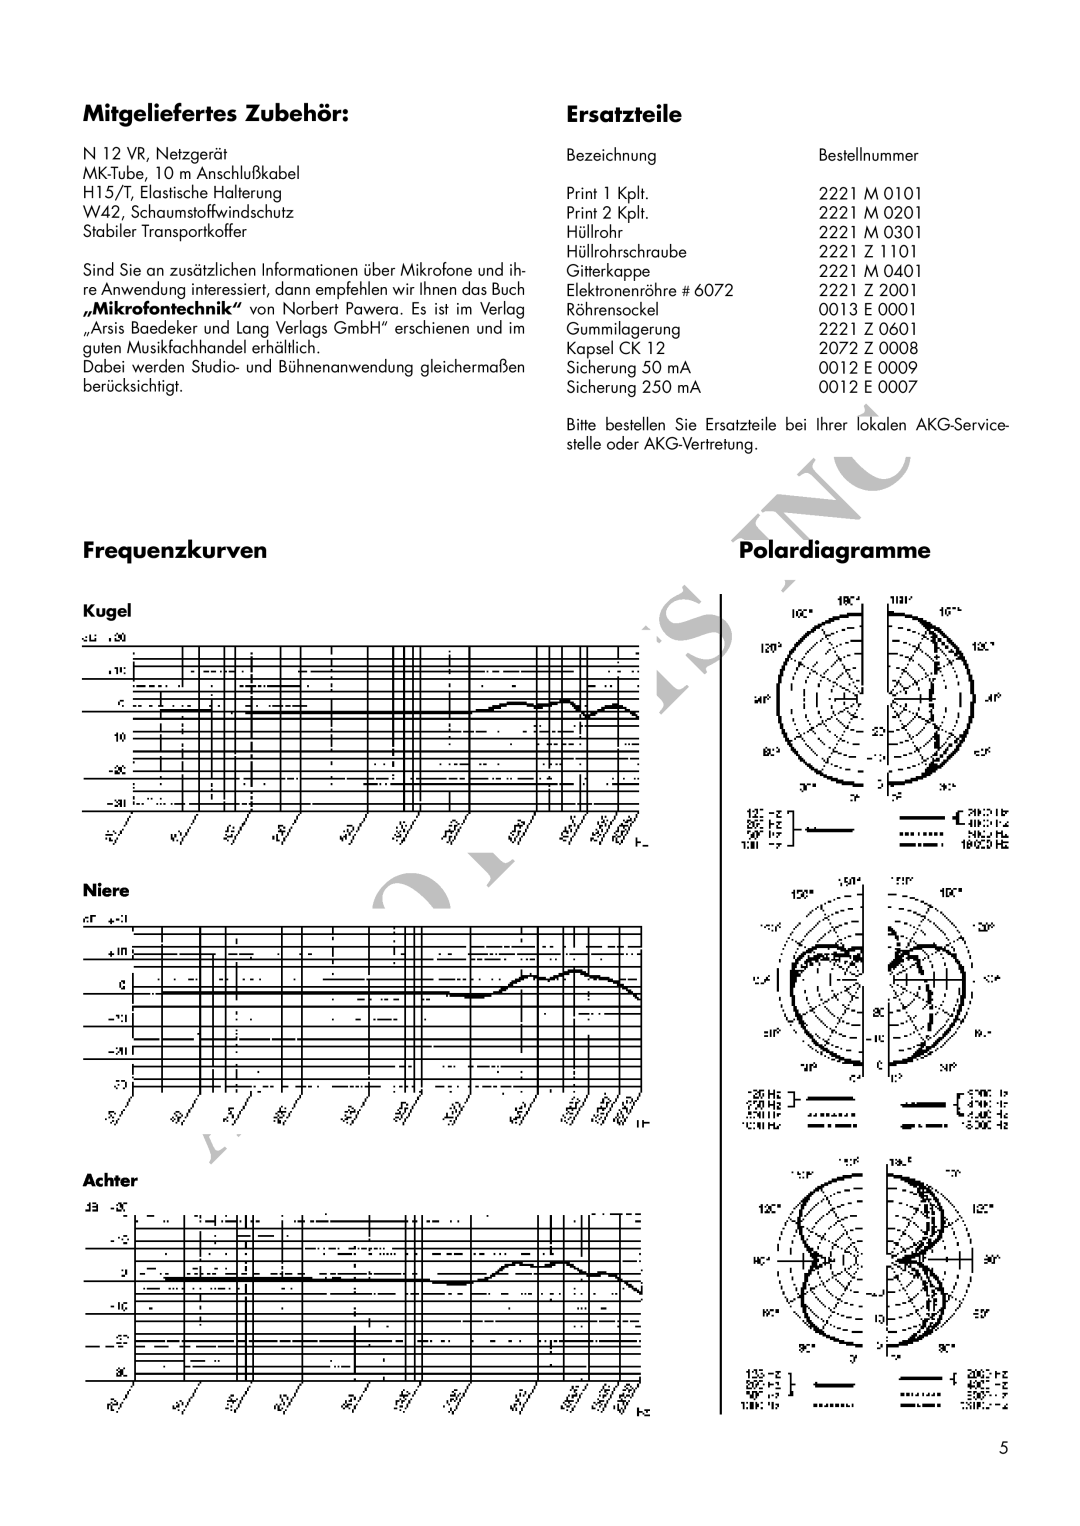 AKG Acoustics C 12VR manual Mitgeliefertes Zubehör, Ersatzteile, Frequenzkurven, Polardiagramme, Kugel Niere Achter 